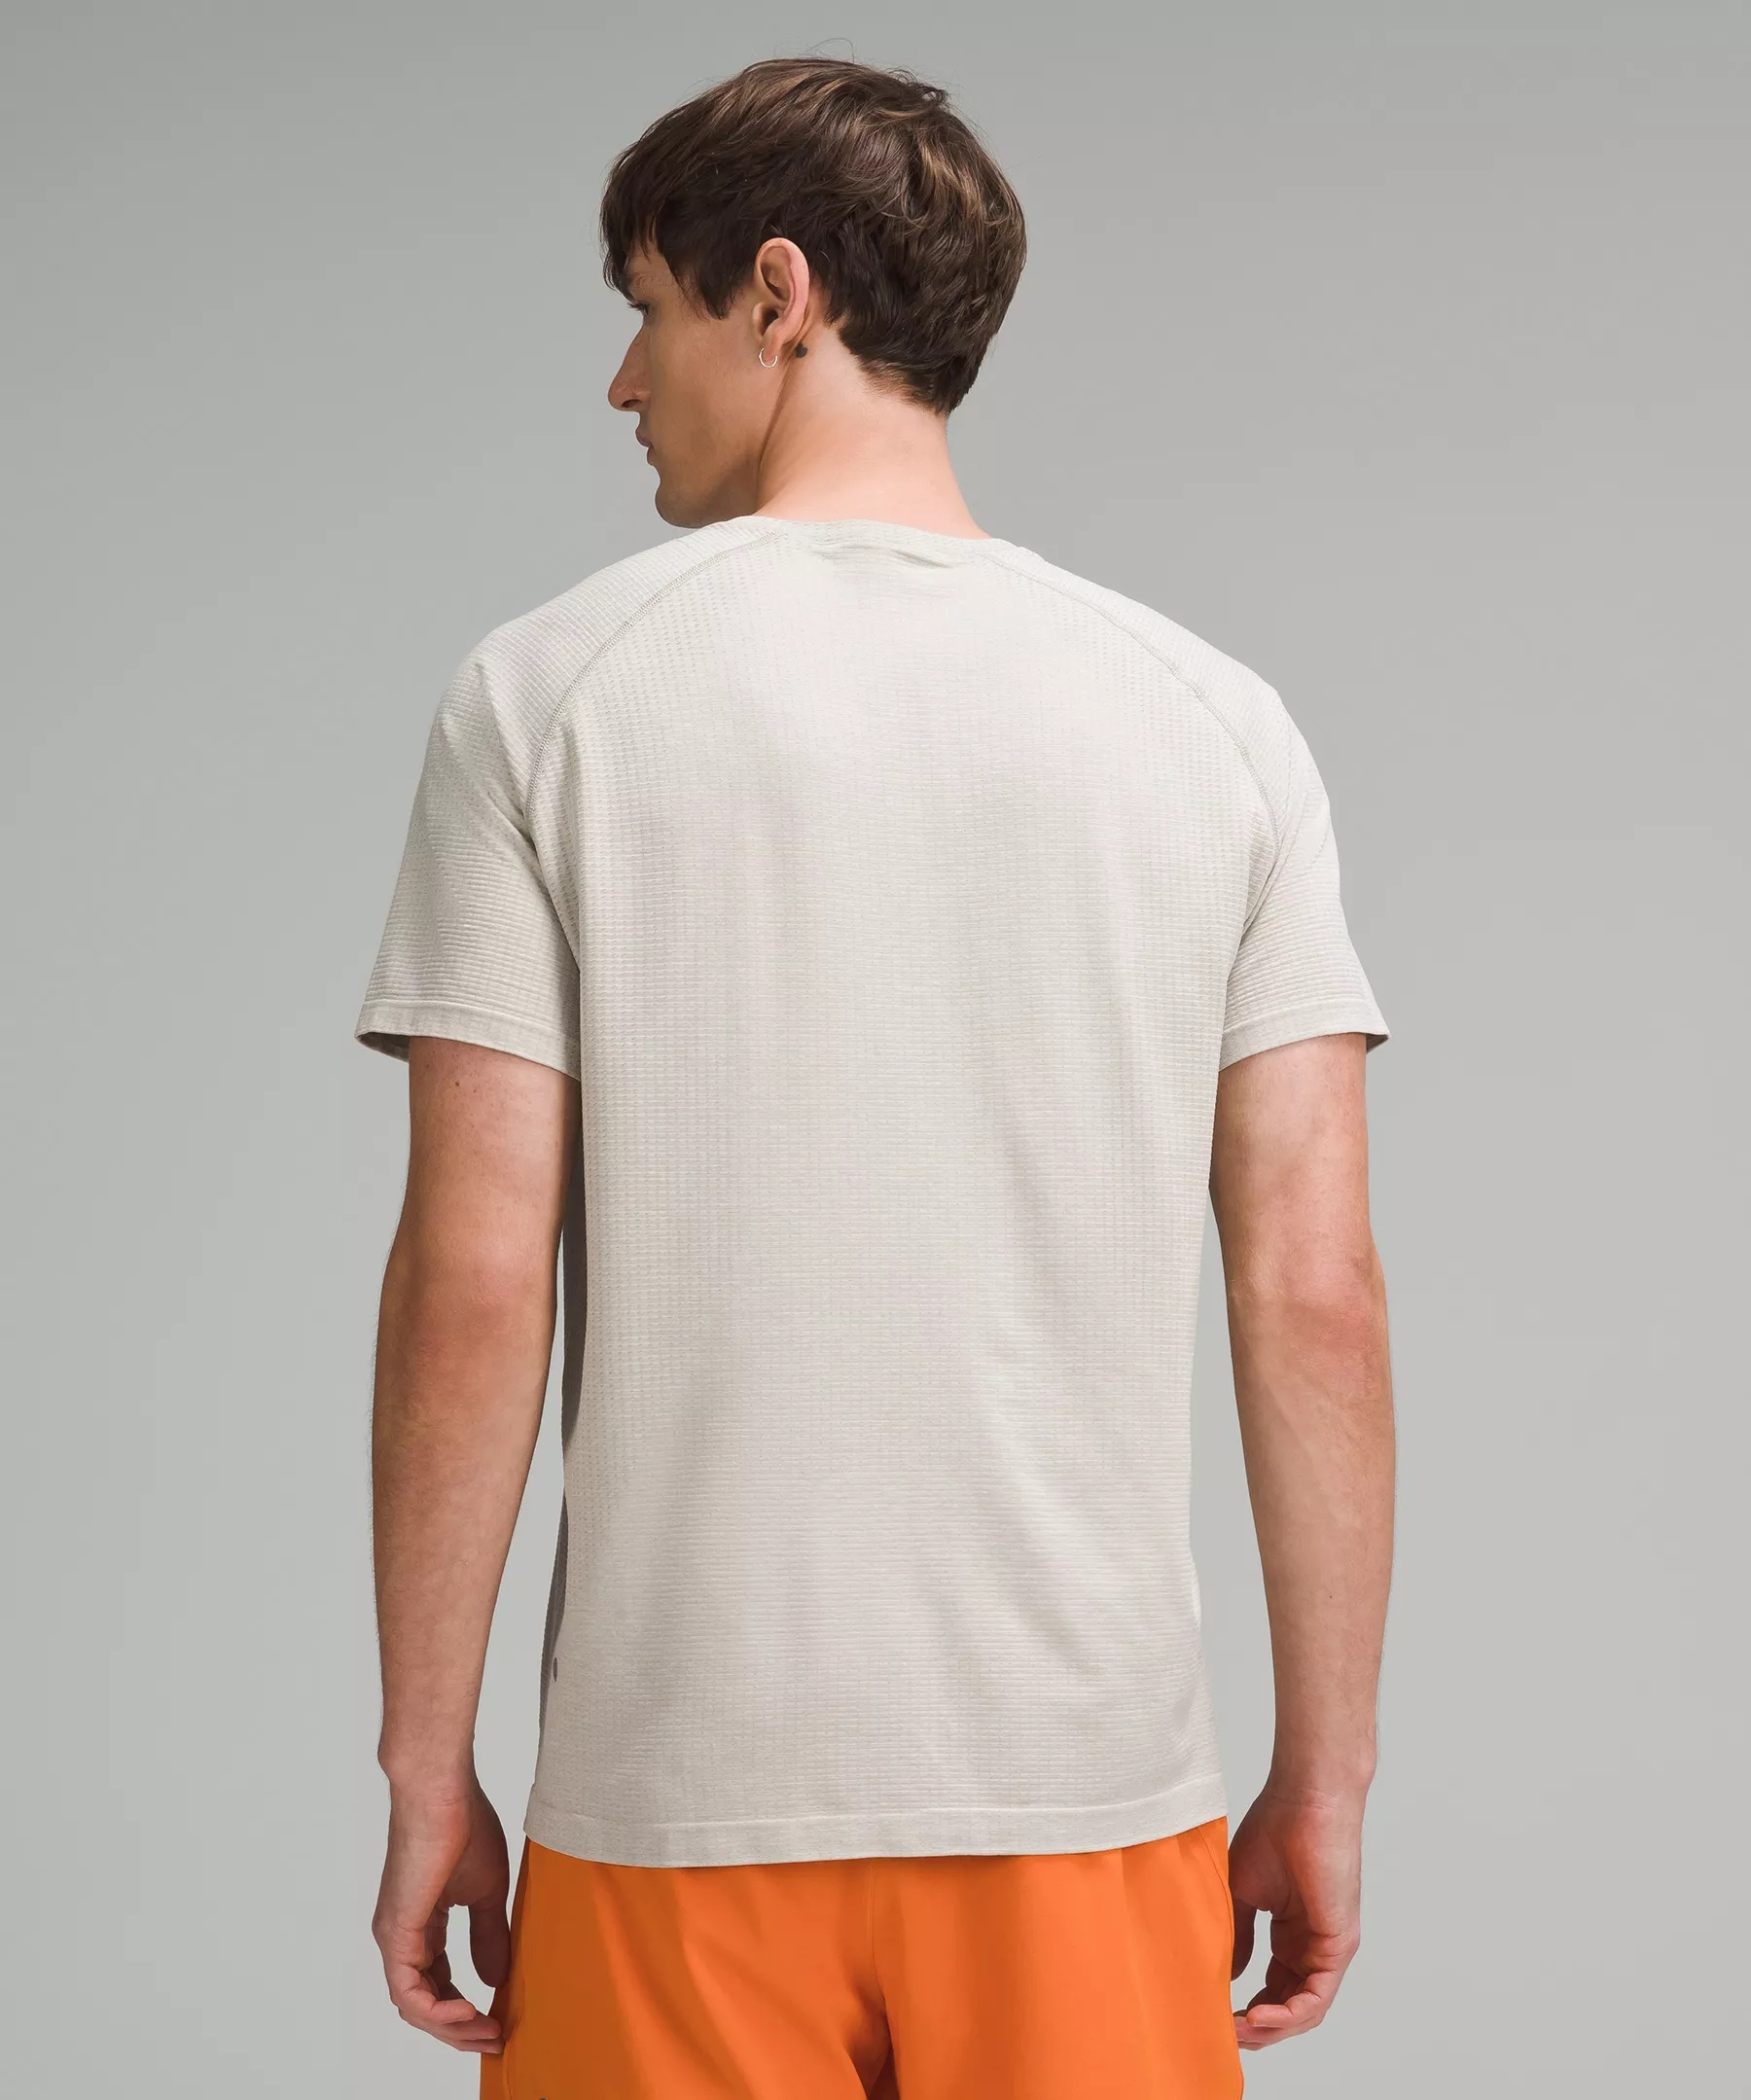 Metal Vent Tech Short-Sleeve Shirt *Updated Fit - 3